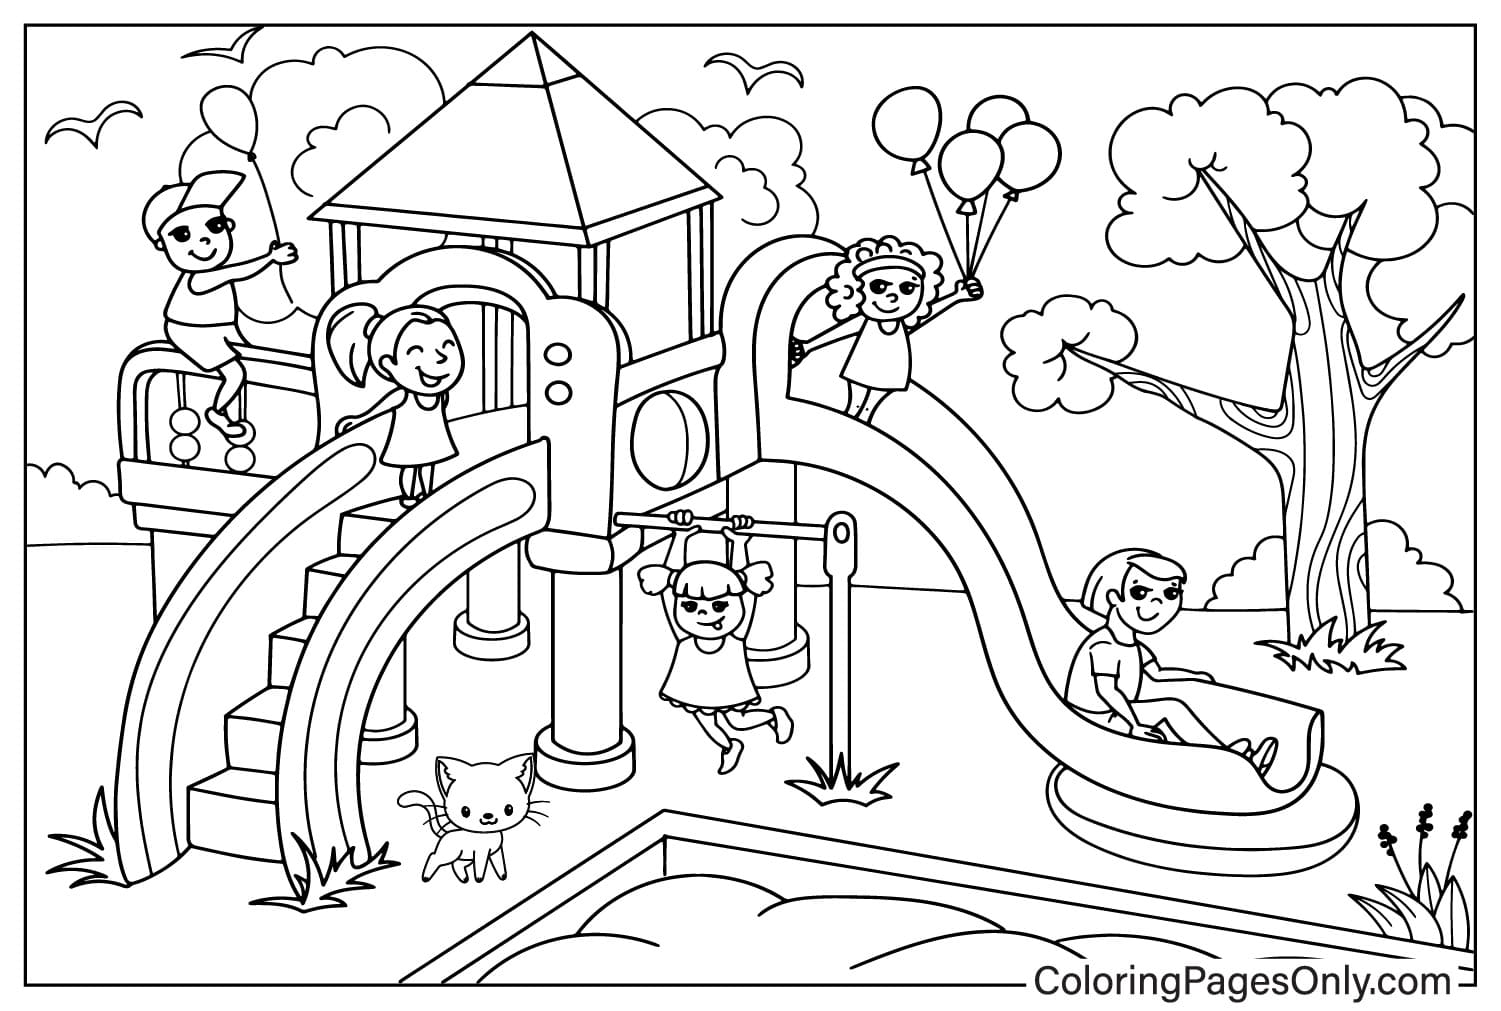 Página para colorir de playground para crianças